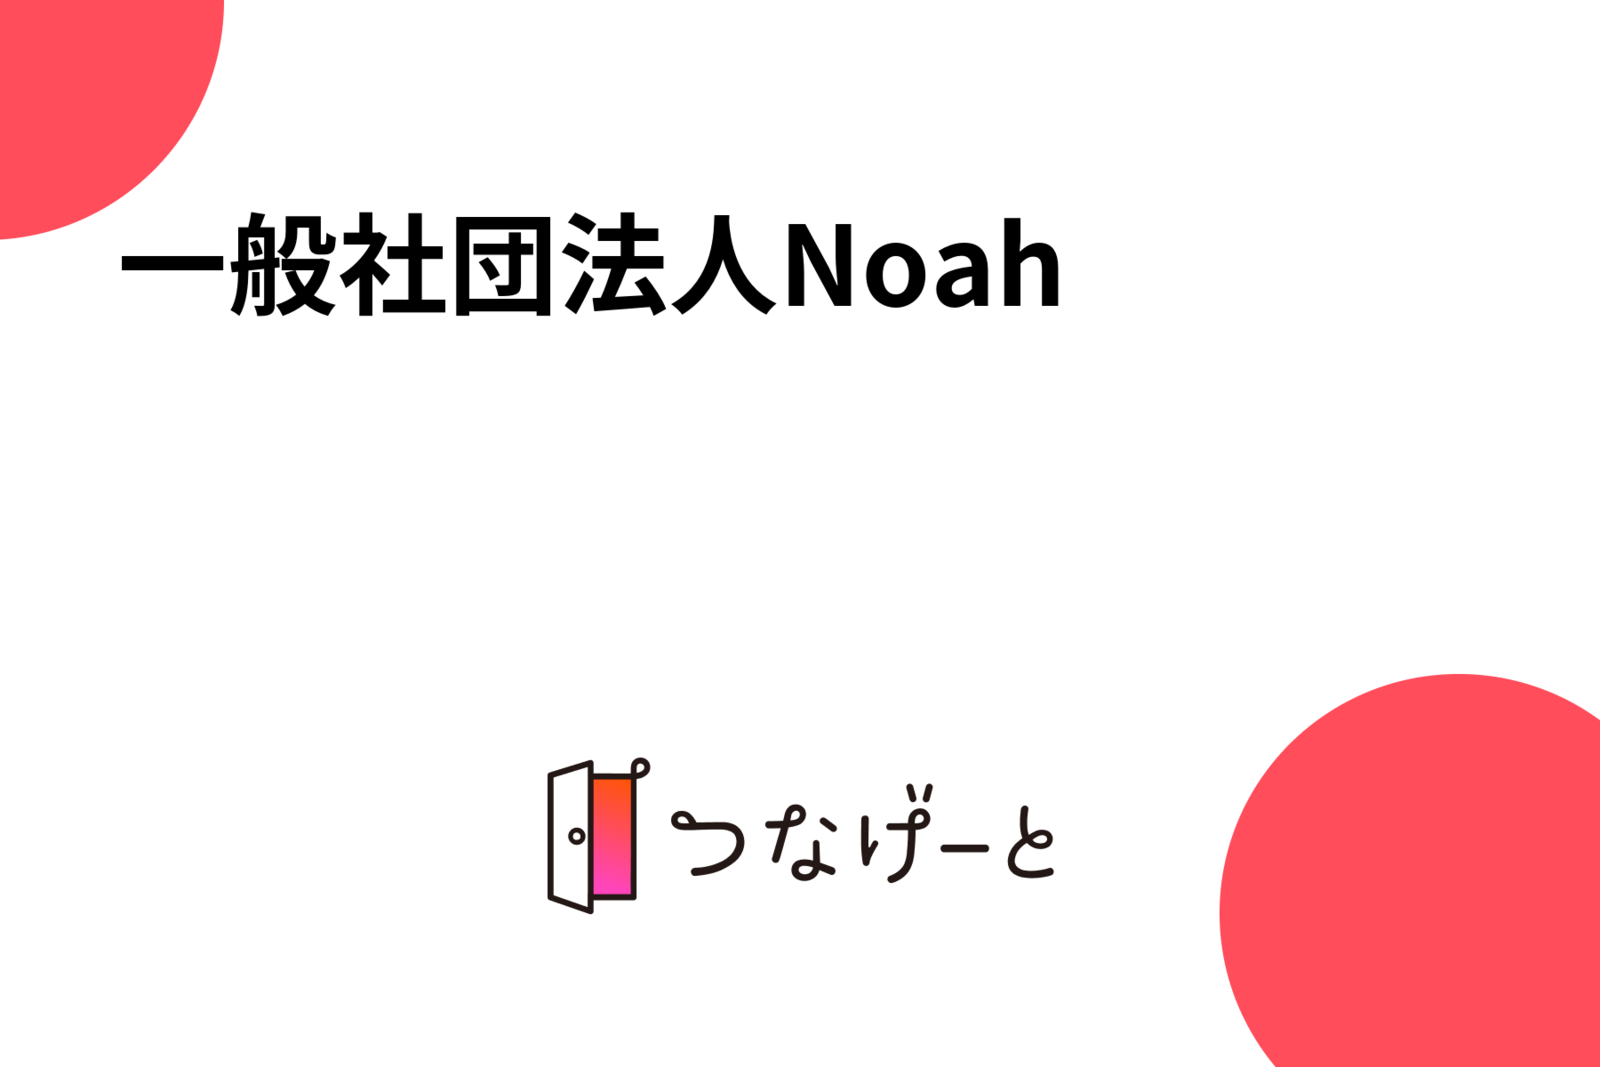 一般社団法人Noah